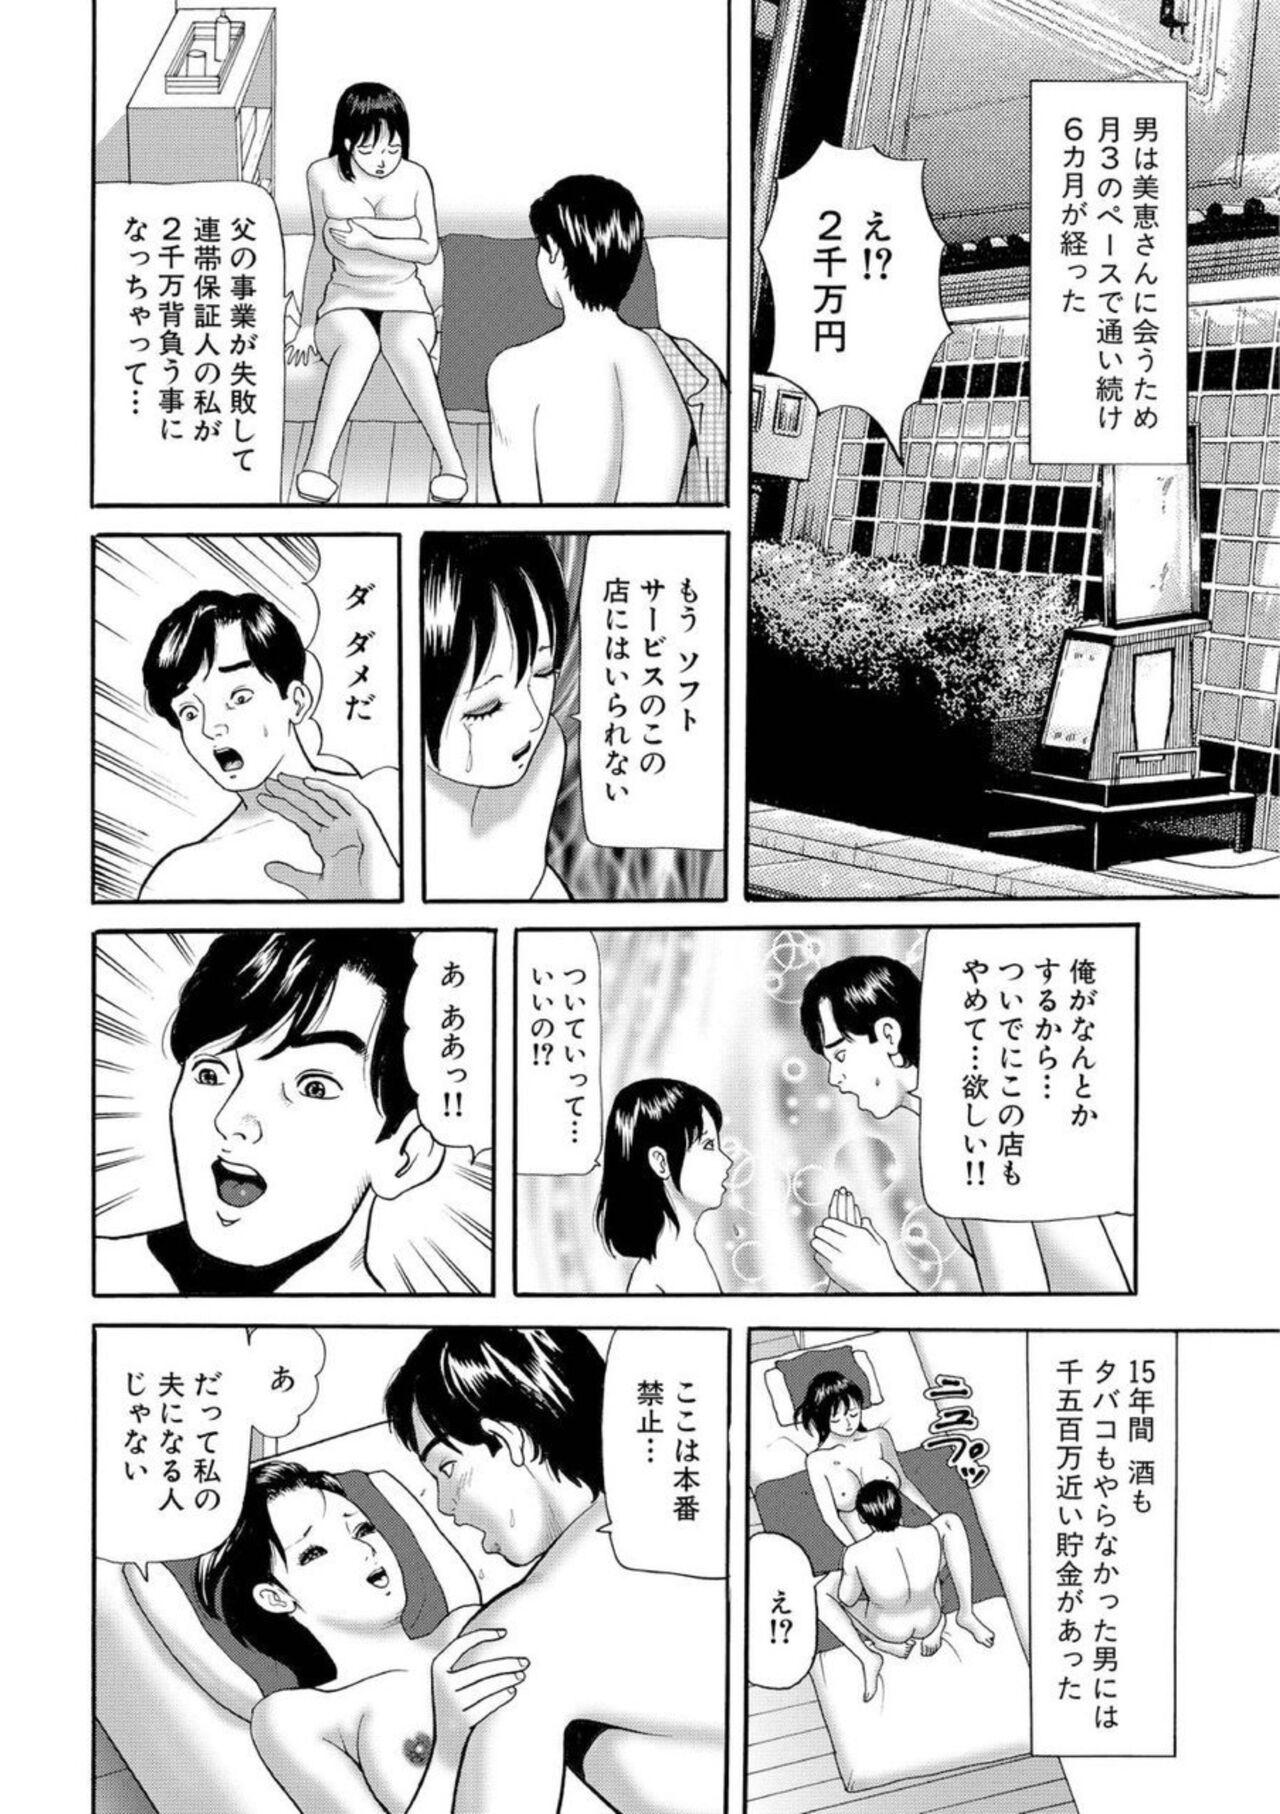 Boy Nyobon Jitsuroku Rape Saiban 1 Cheating - Page 9